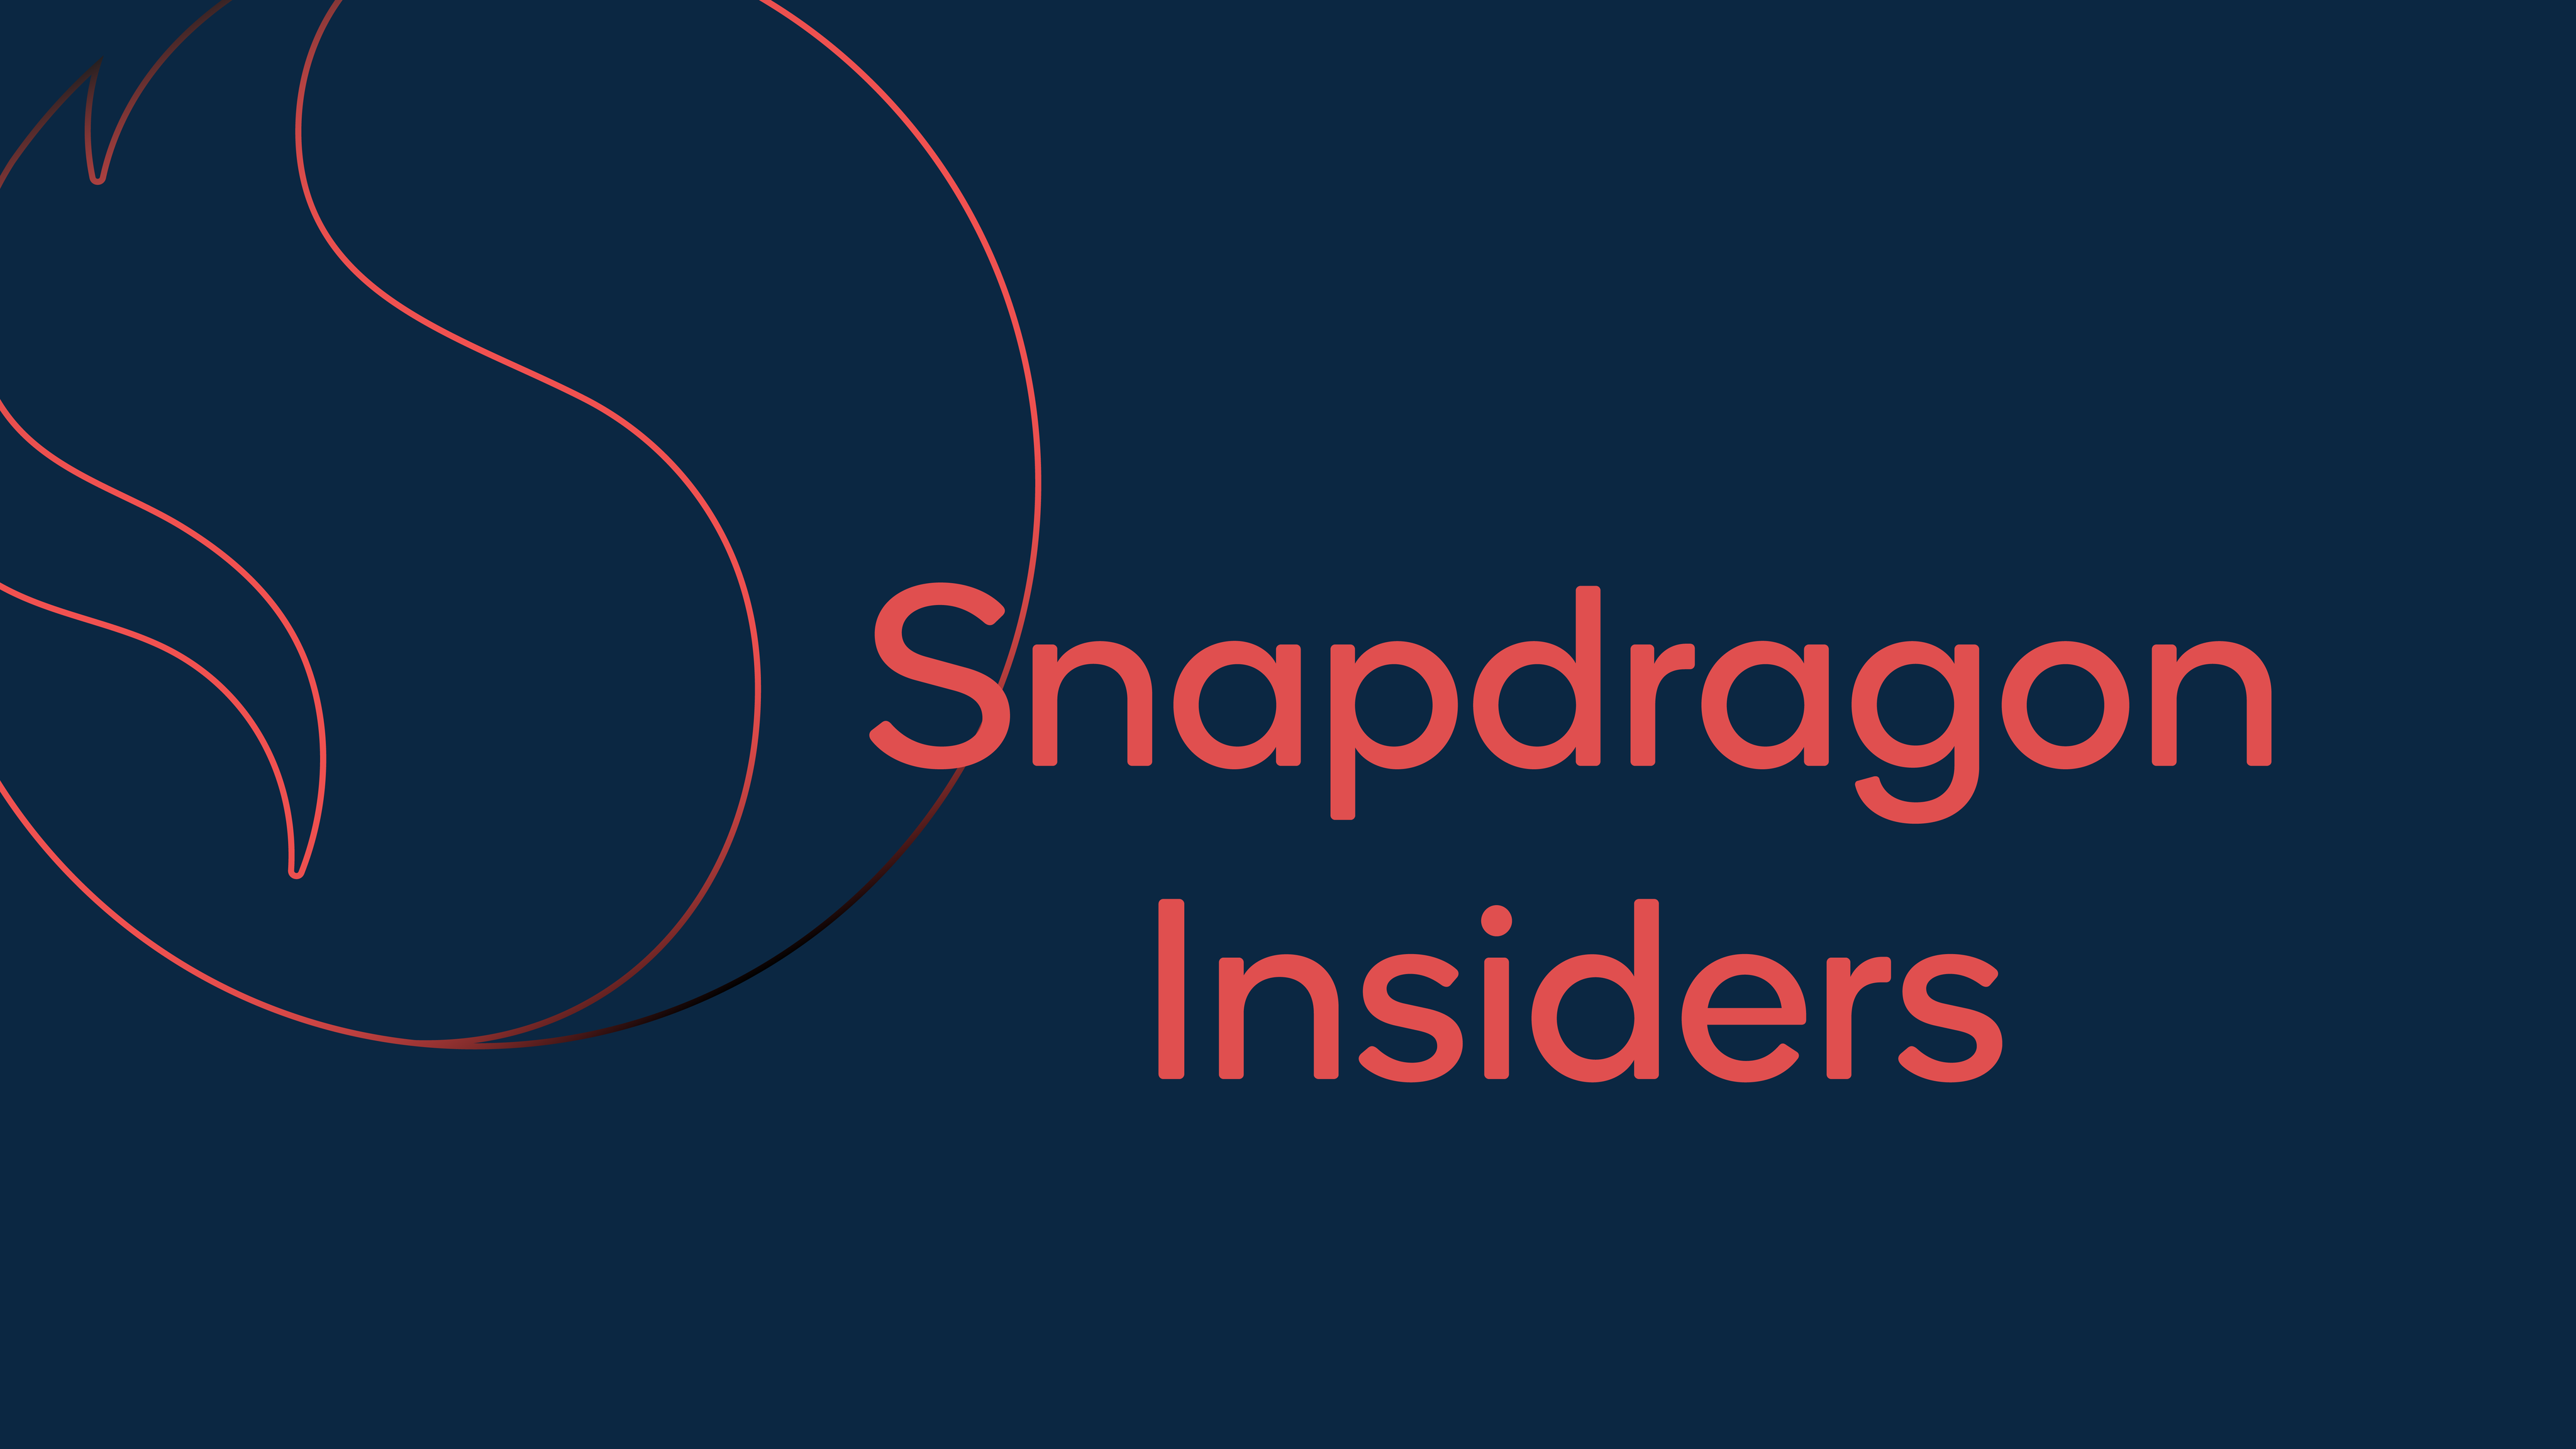 Qualcomm führt das Snapdragon Insiders Access Program für vorrangigen Zugriff auf neue Chipsätze ein